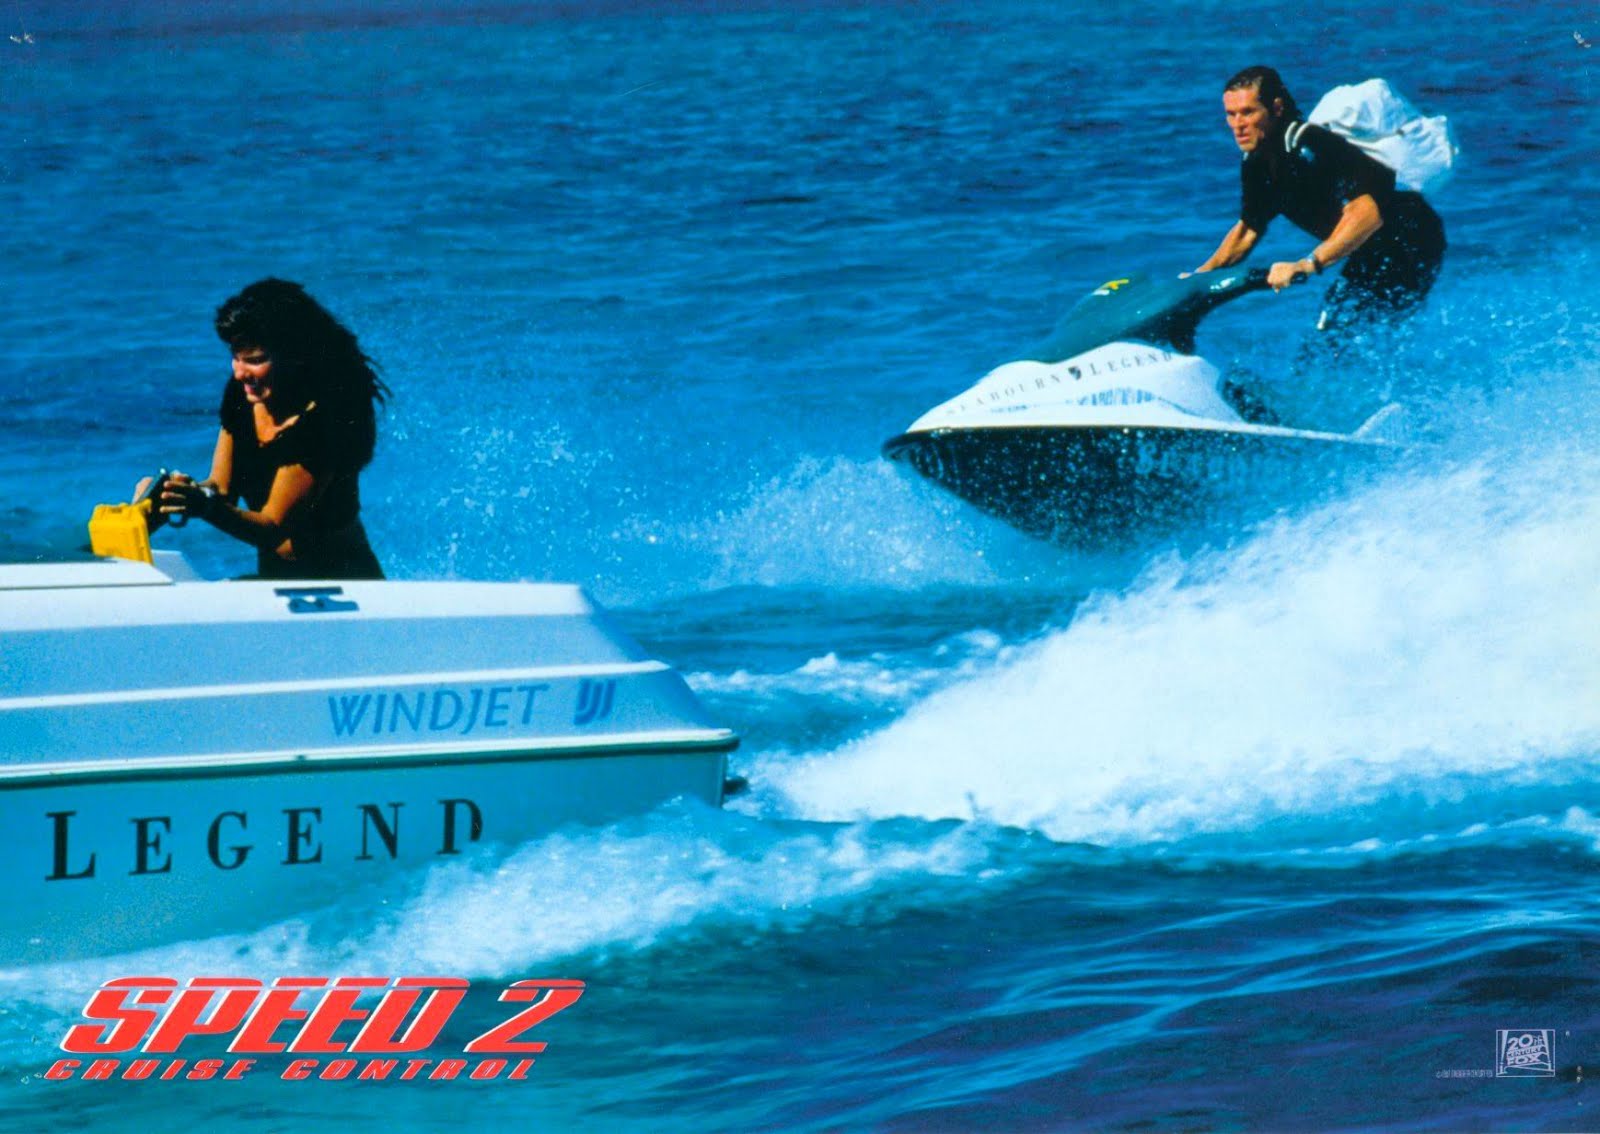 Speed 2 : Cap sur le danger (1996) Jan De Bont - Speed 2 : Cruise control (07.10.1996 / 28.01.1997)